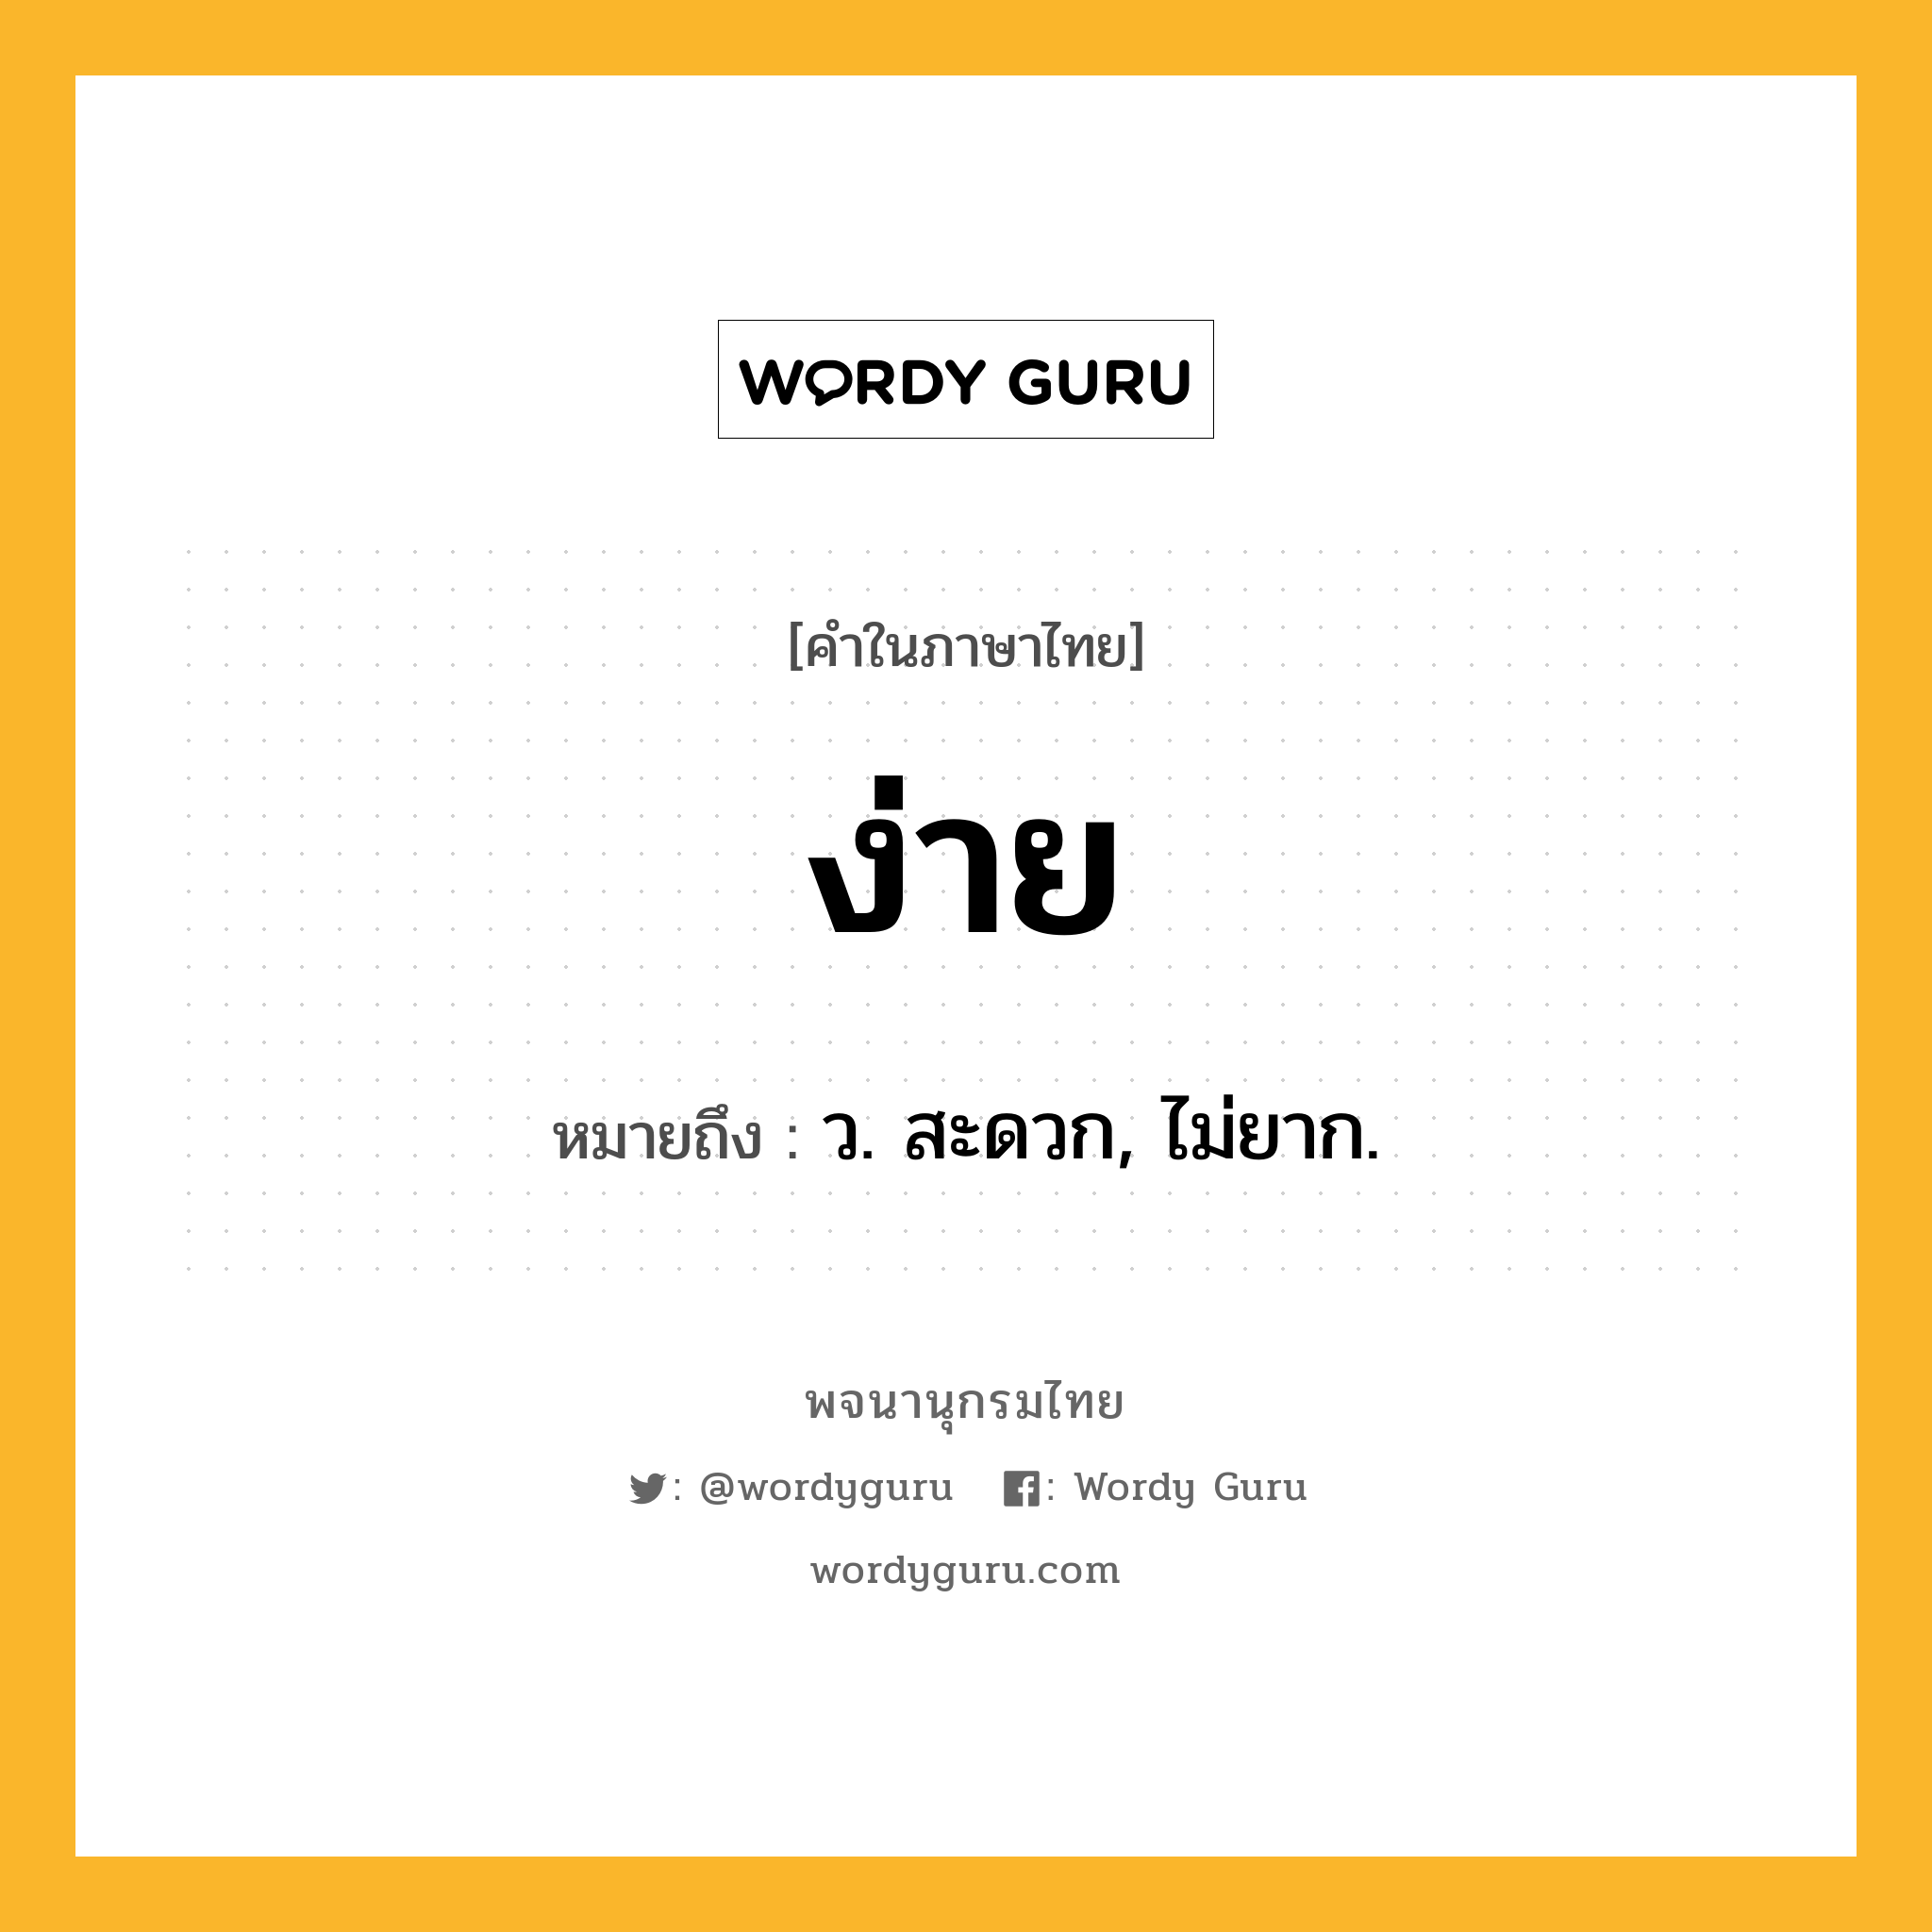 ง่าย ความหมาย หมายถึงอะไร?, คำในภาษาไทย ง่าย หมายถึง ว. สะดวก, ไม่ยาก.